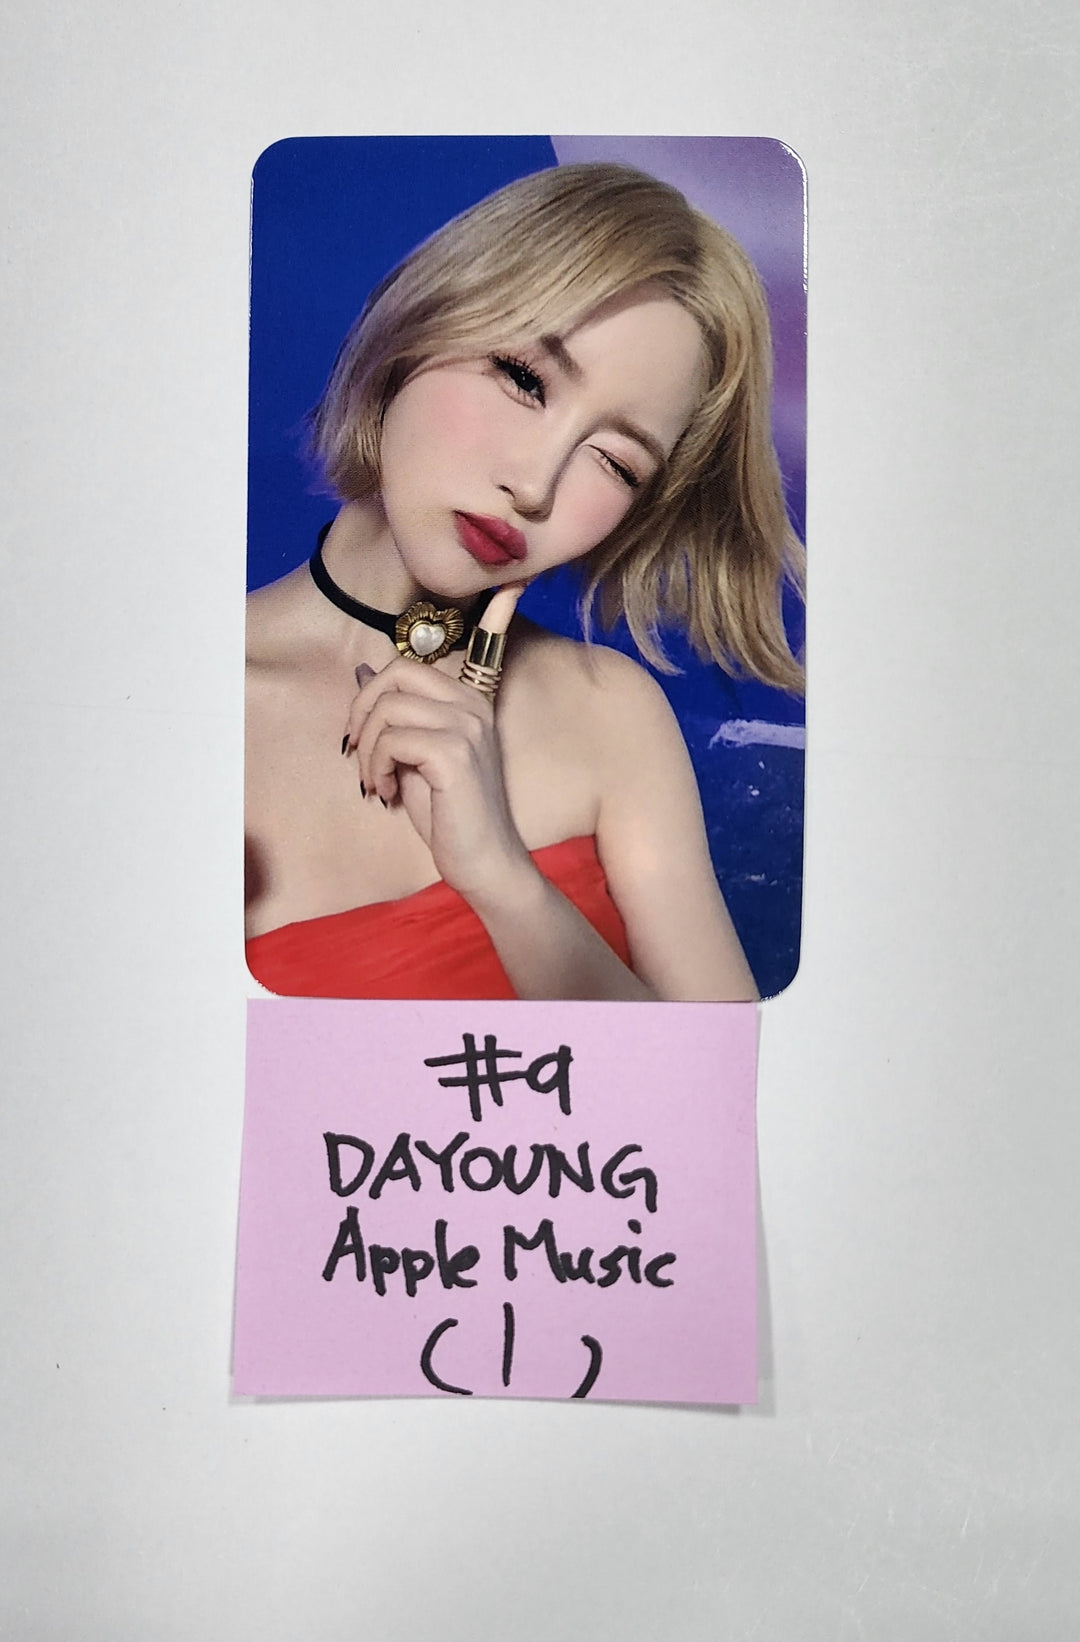 우주소녀 "Sequence" - Apple Music 선주문 혜택 포토카드